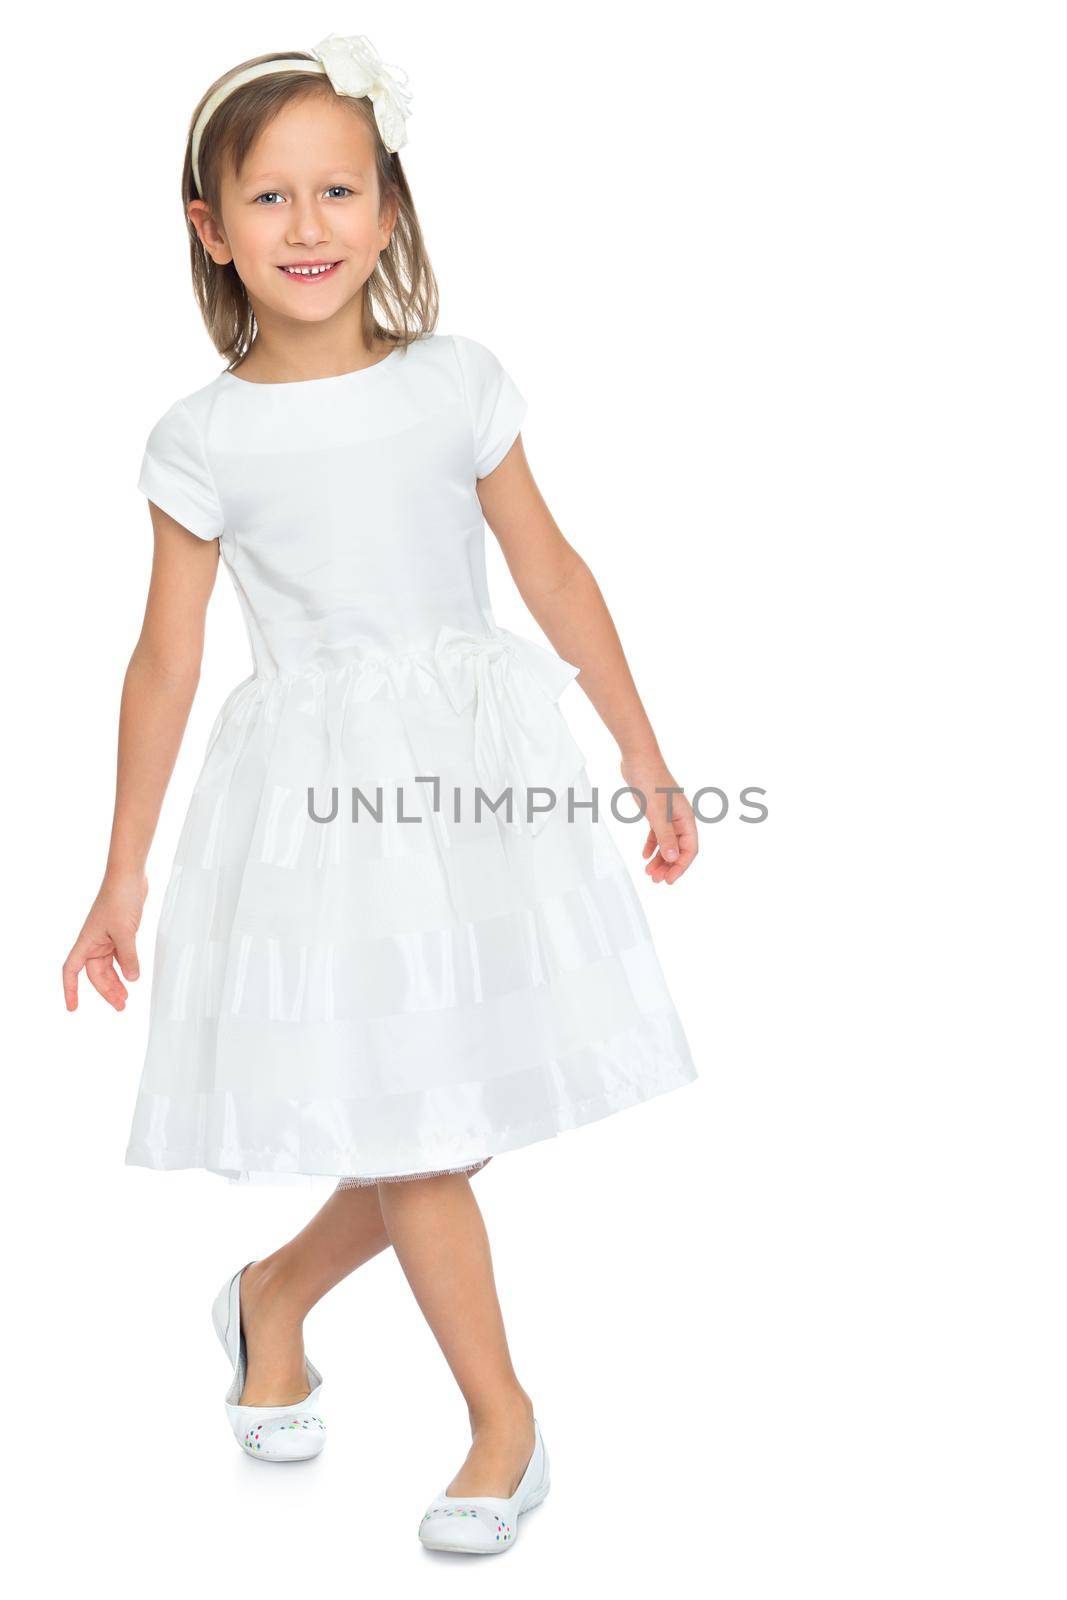 Girl in white dress by kolesnikov_studio